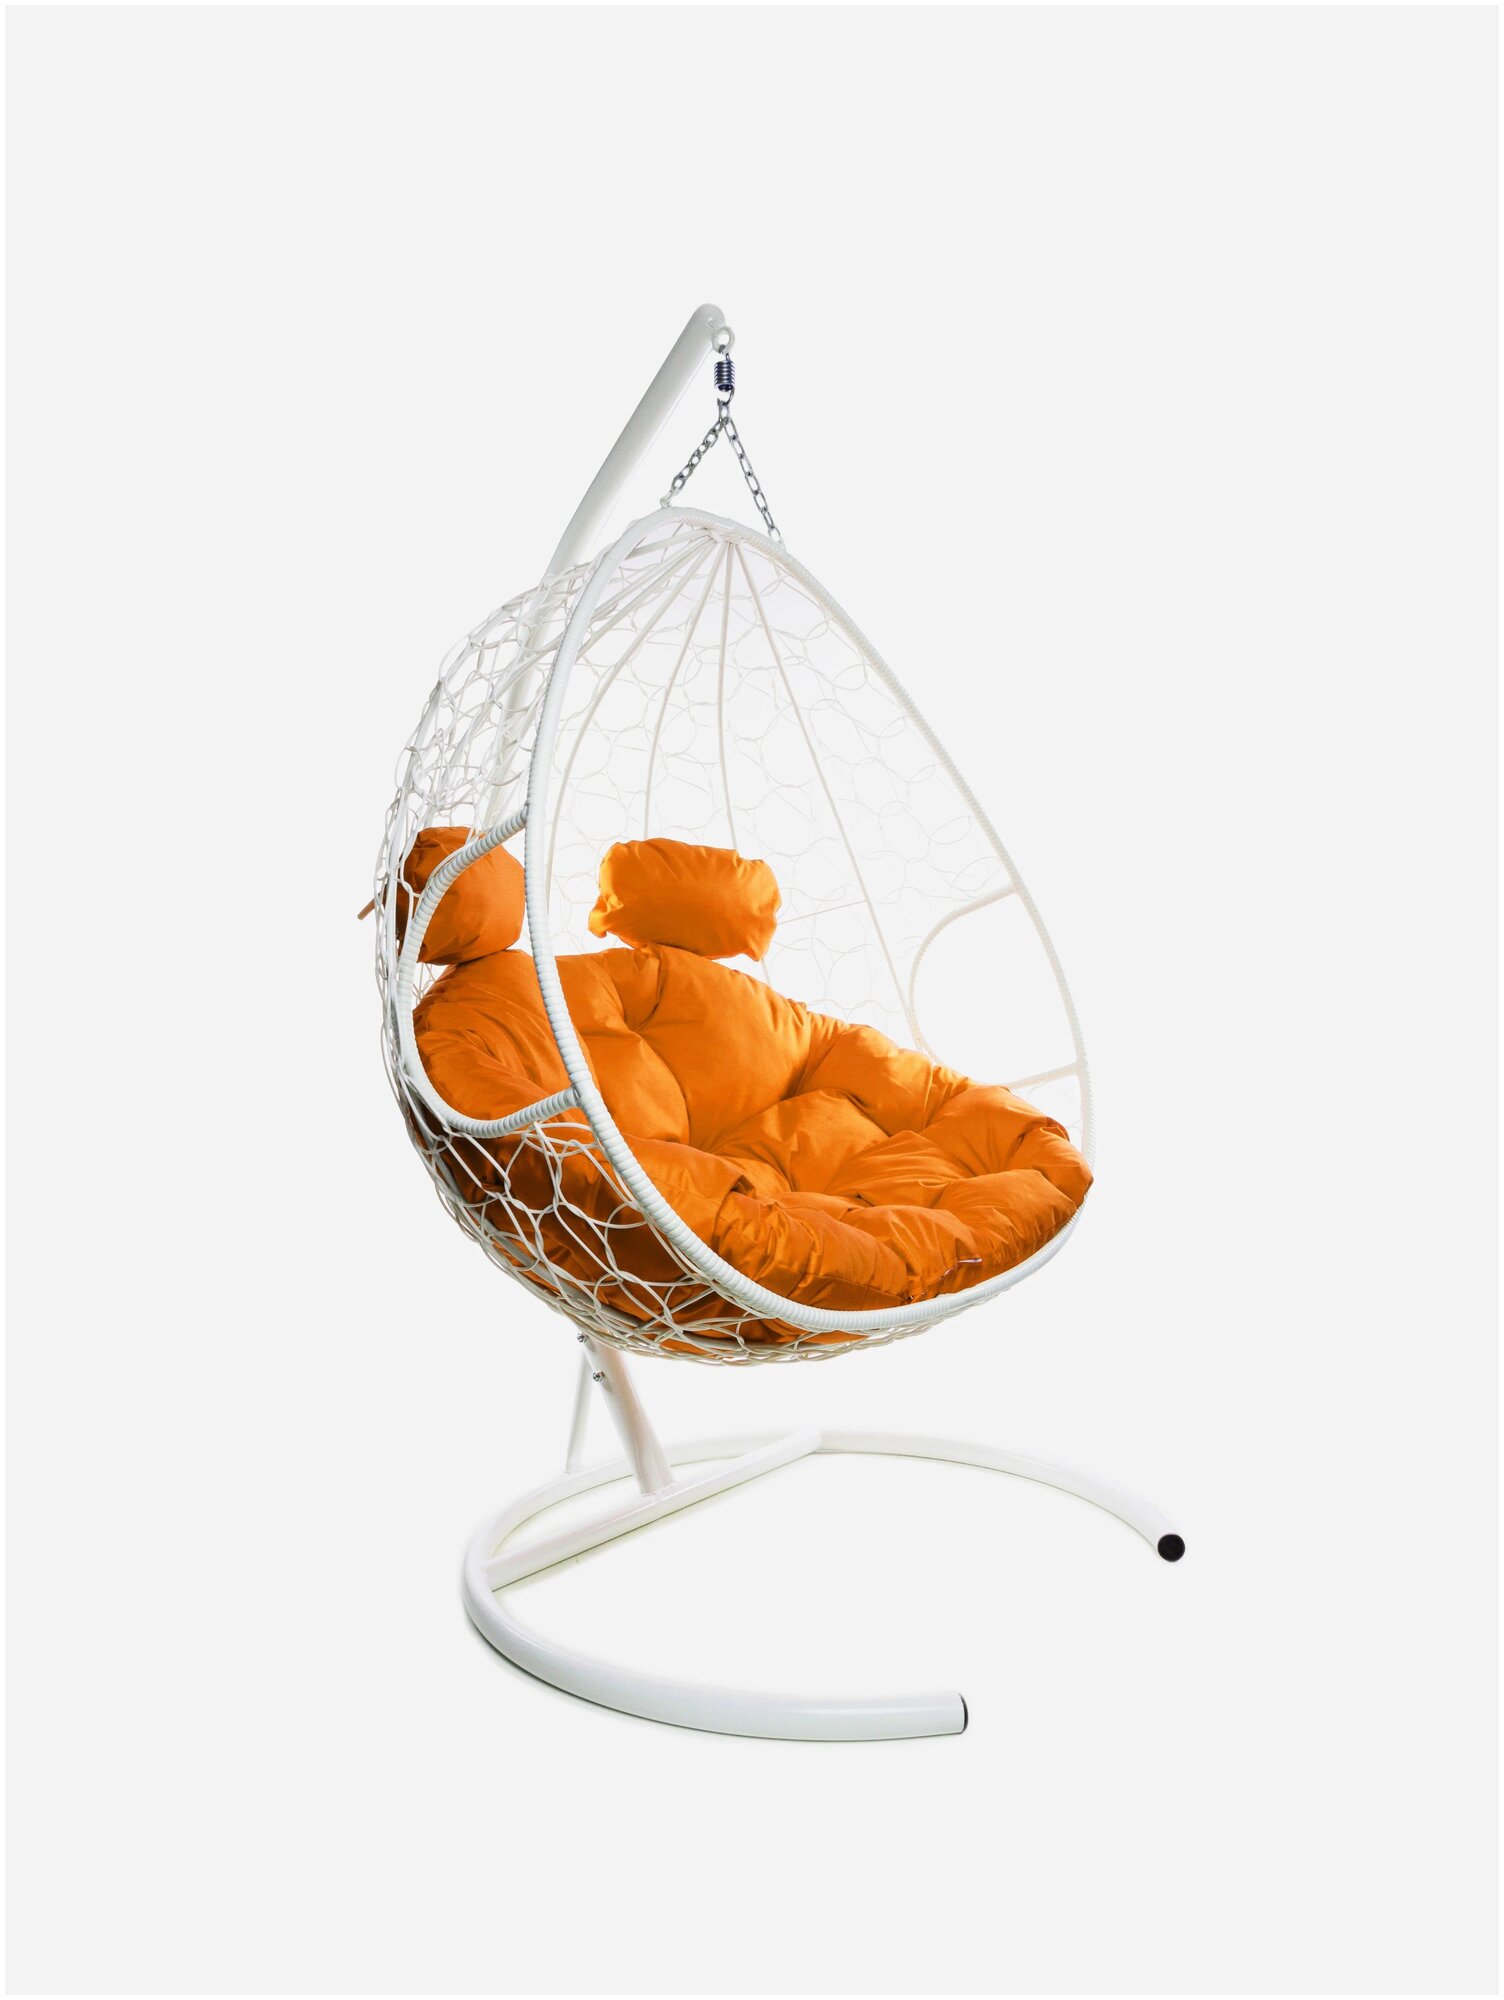 Подвесное кресло m-group для двоих белое, оранжевая подушка - фотография № 19